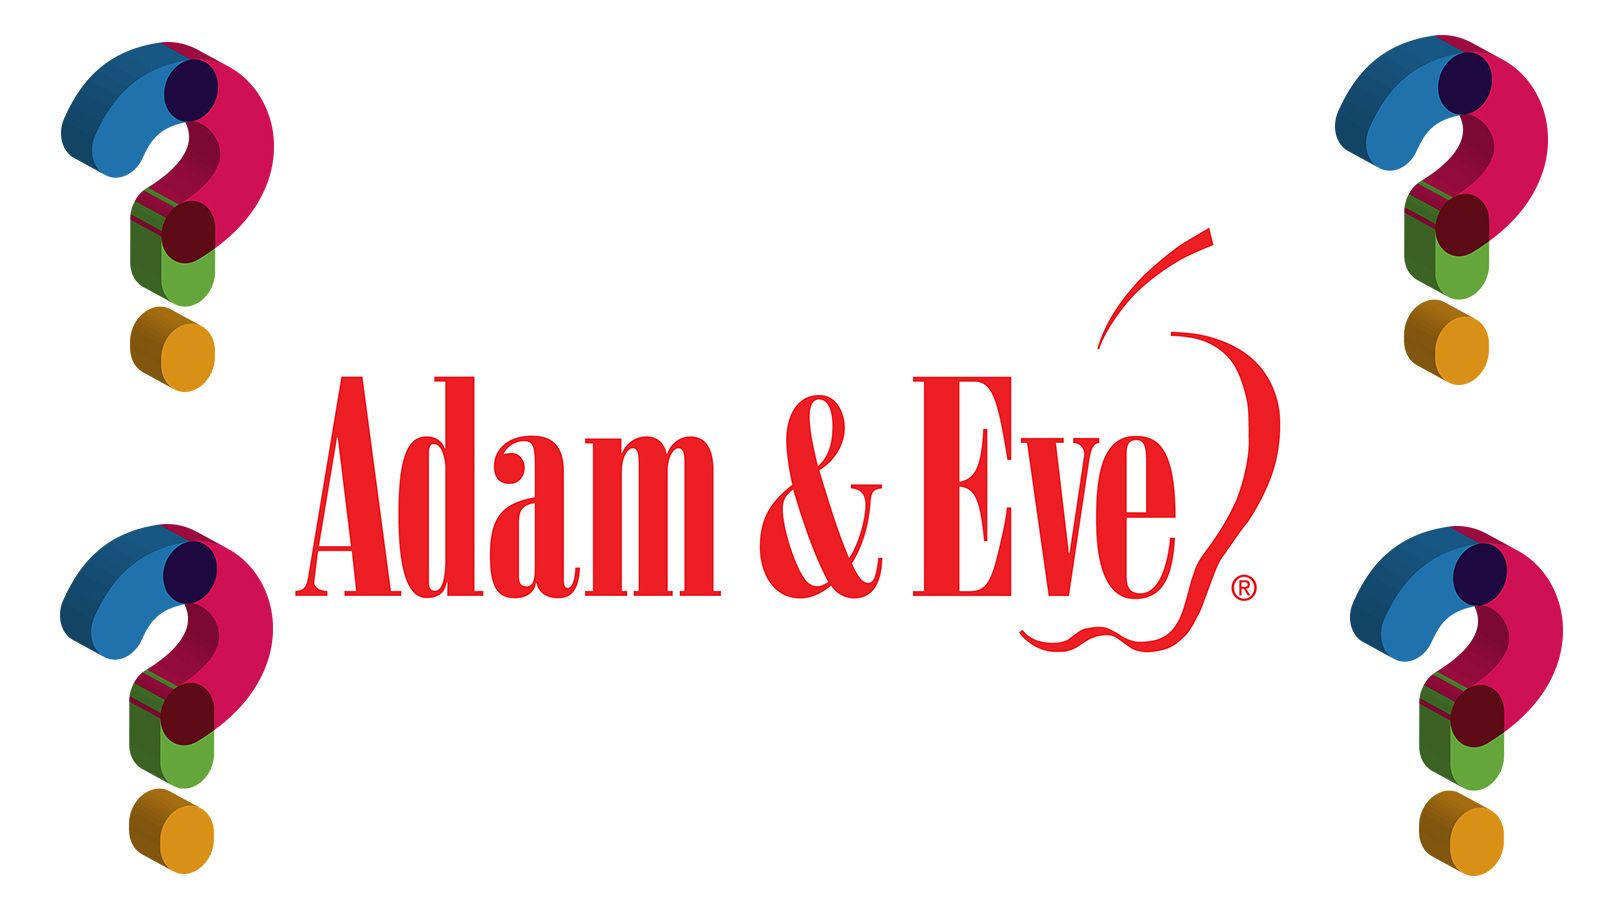 Adam & Eve Survey Asks About Transgender Restroom Use